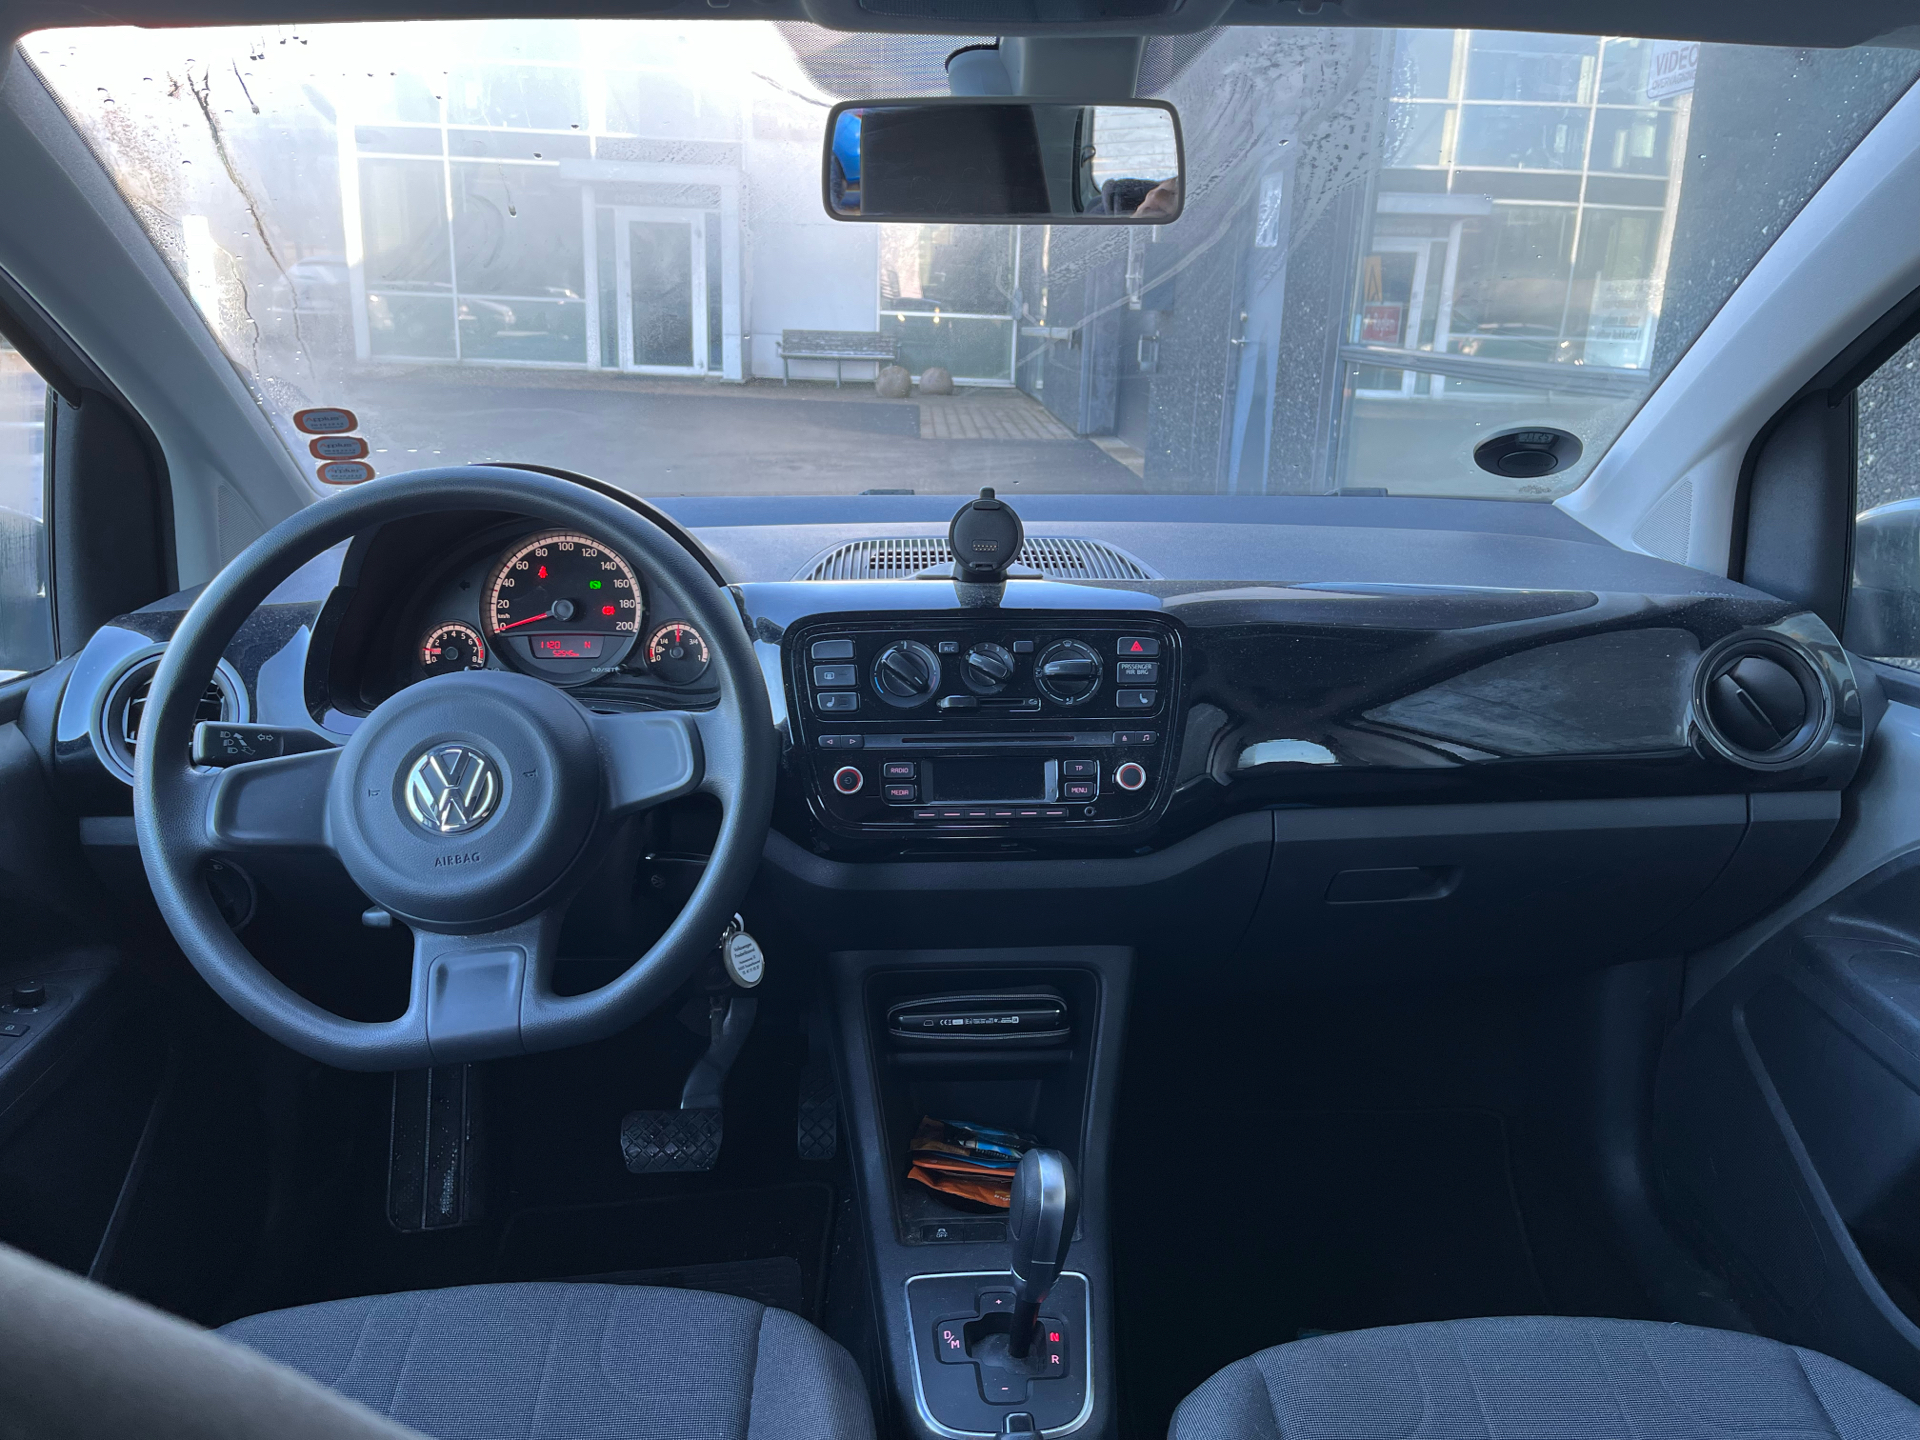 Billede af VW up 1,0 MPI Move ASG 75HK 5d Aut.